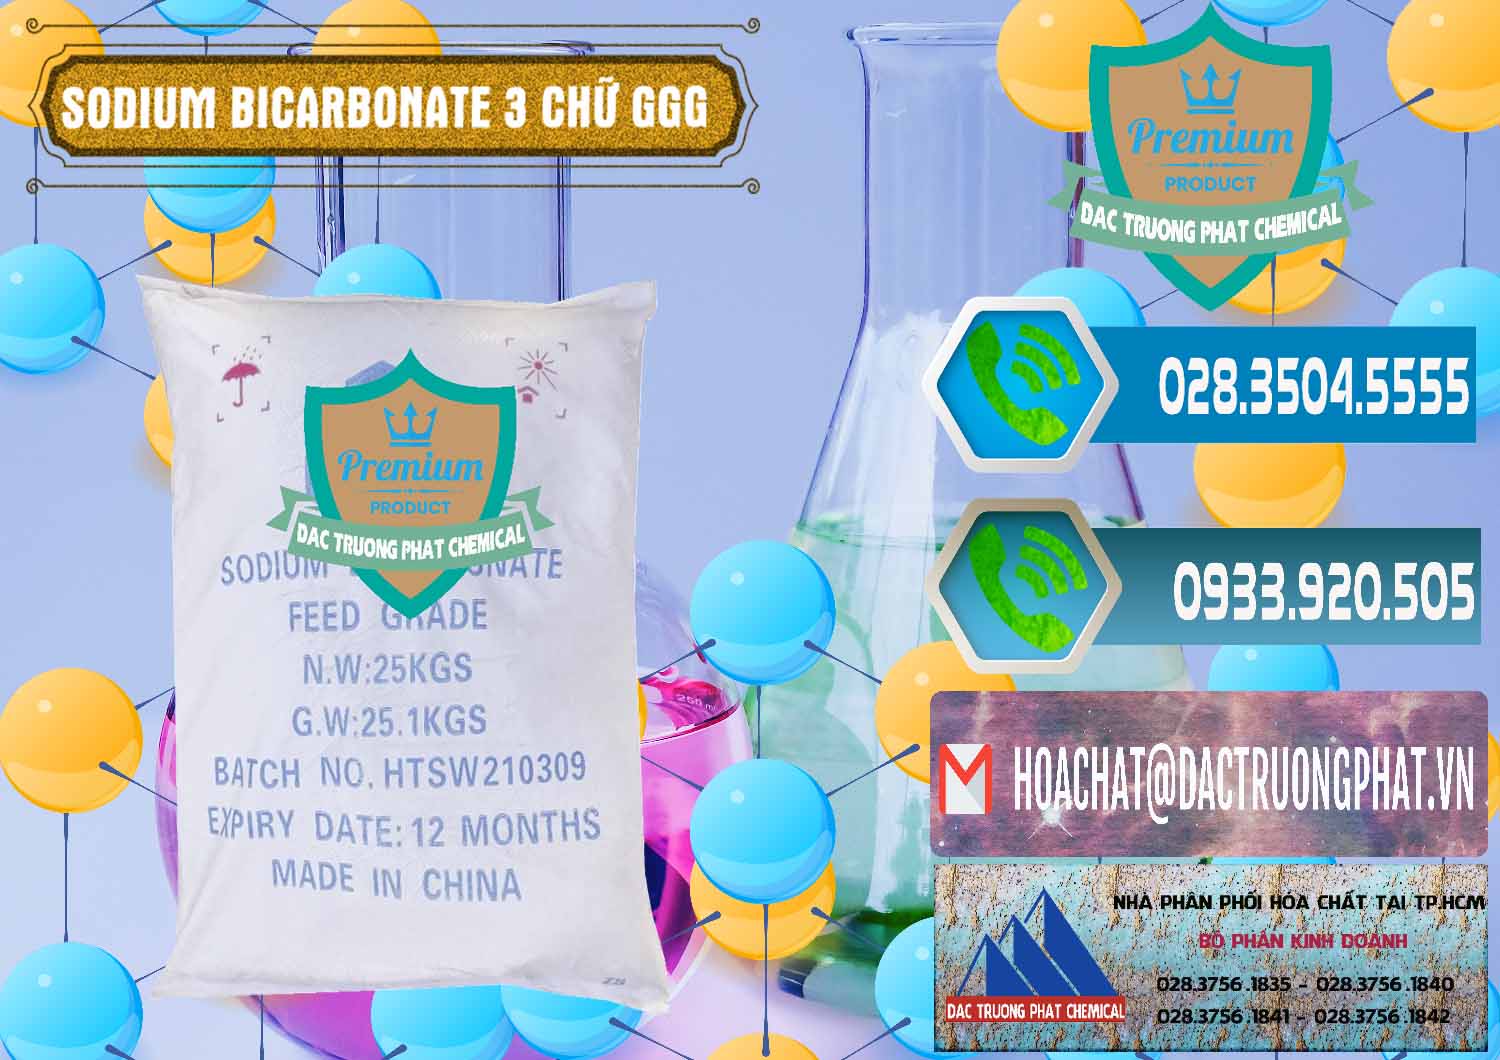 Công ty chuyên bán và phân phối Sodium Bicarbonate – Bicar NaHCO3 Food Grade 3 Chữ GGG Trung Quốc China - 0259 - Chuyên phân phối ( cung cấp ) hóa chất tại TP.HCM - congtyhoachat.net